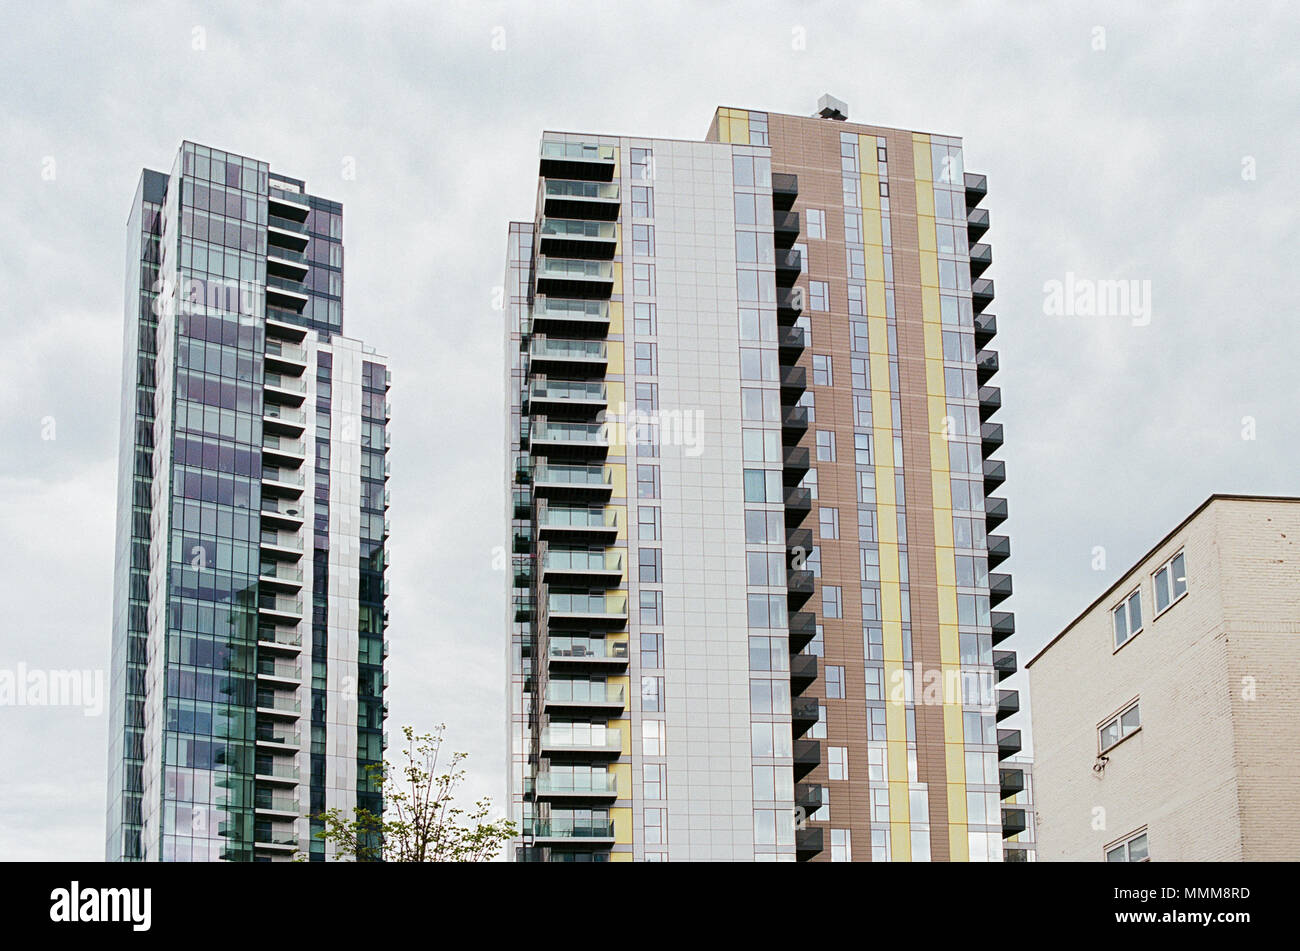 La nouvelle Skyline Appartements de Woodberry Down, sept Sœurs Road, North London UK Banque D'Images